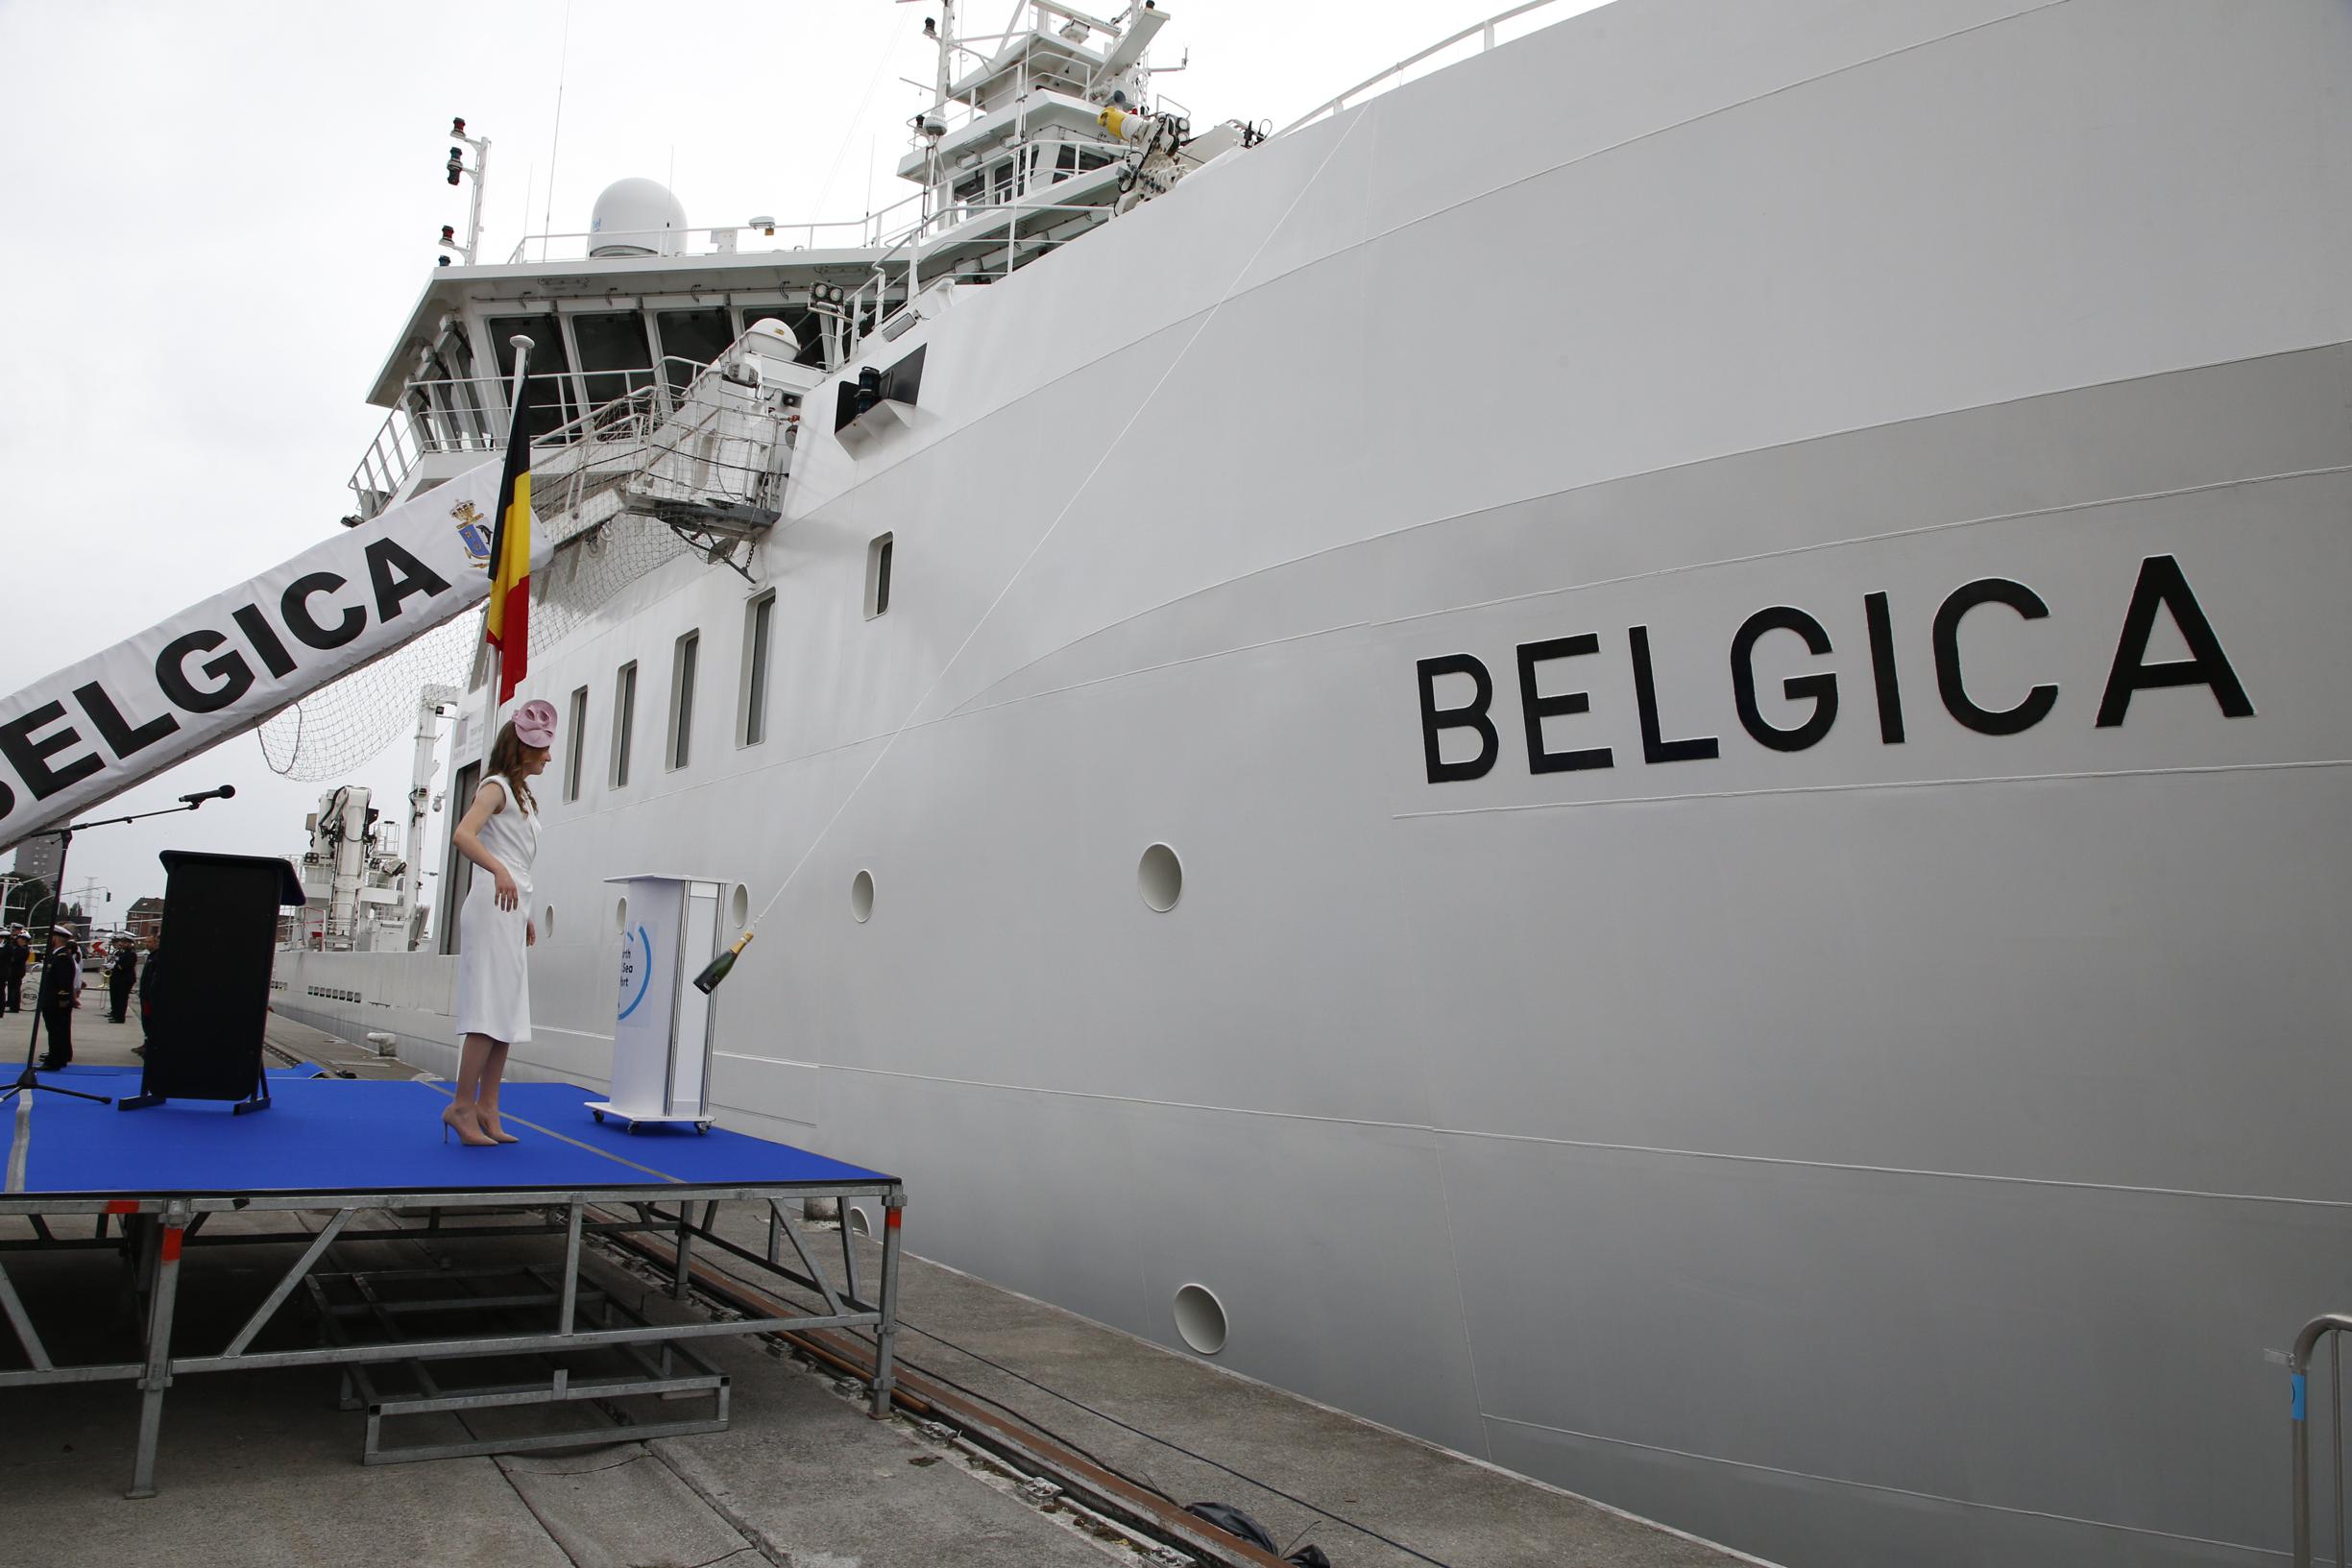 La principessa Elisabetta battezza la nave da ricerca Belgica